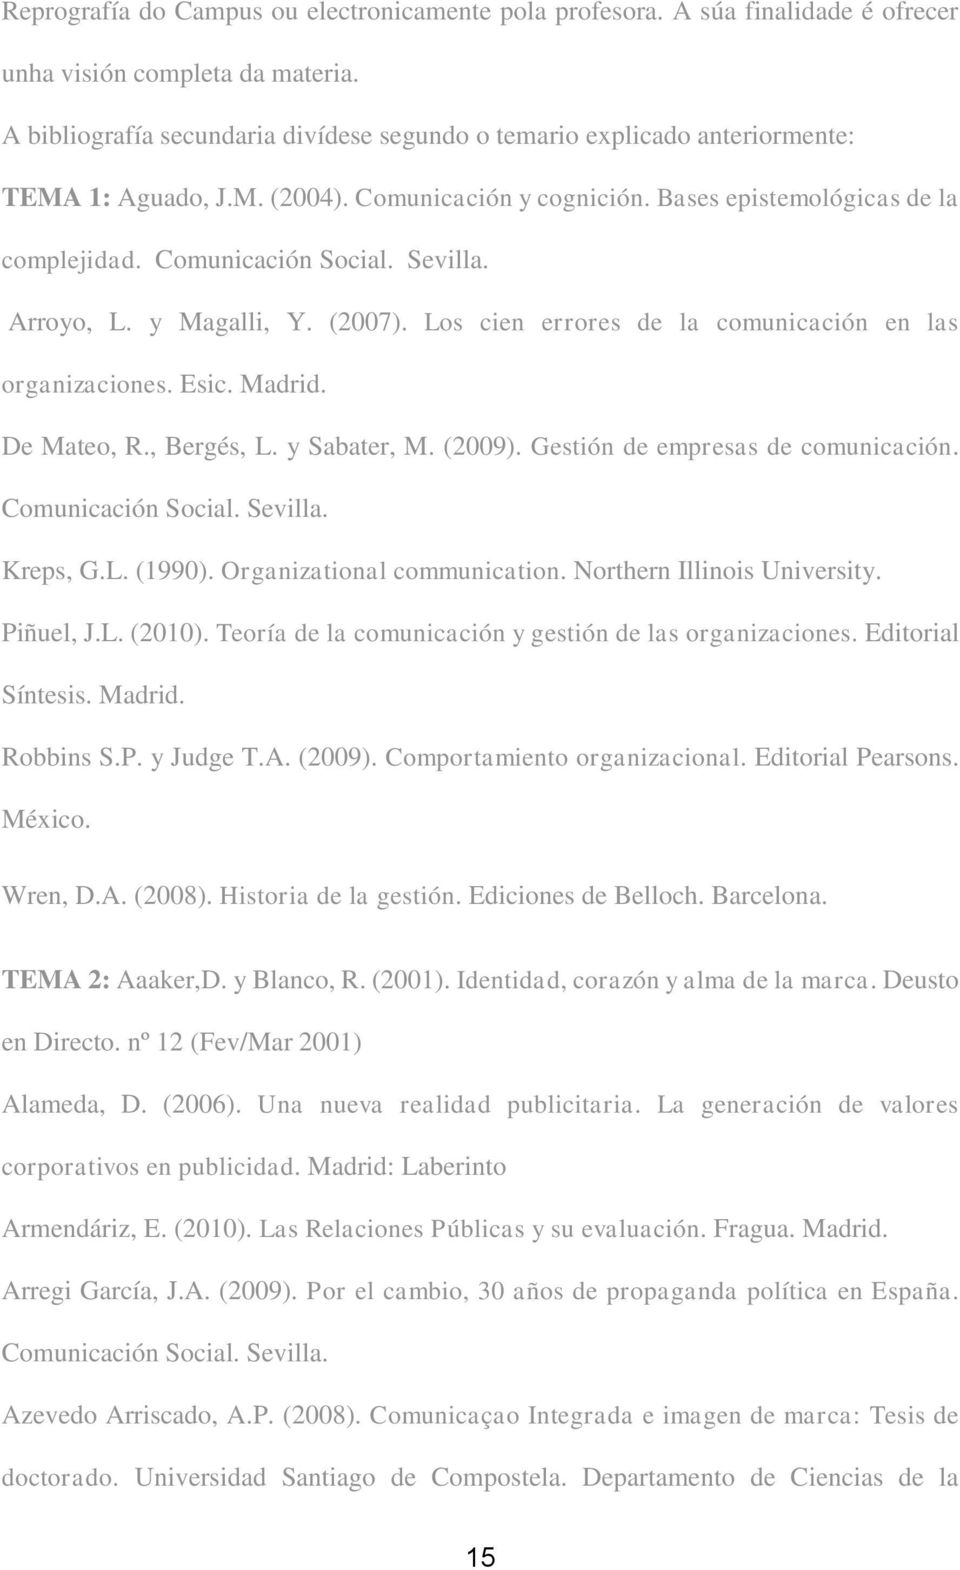 Sevilla. Arroyo, L. y Magalli, Y. (2007). Los cien errores de la comunicaci¾n en las organizaciones. Esic. Madrid. De Mateo, R., BergÚs, L. y Sabater, M. (2009). Gesti¾n de empresas de comunicaci¾n.